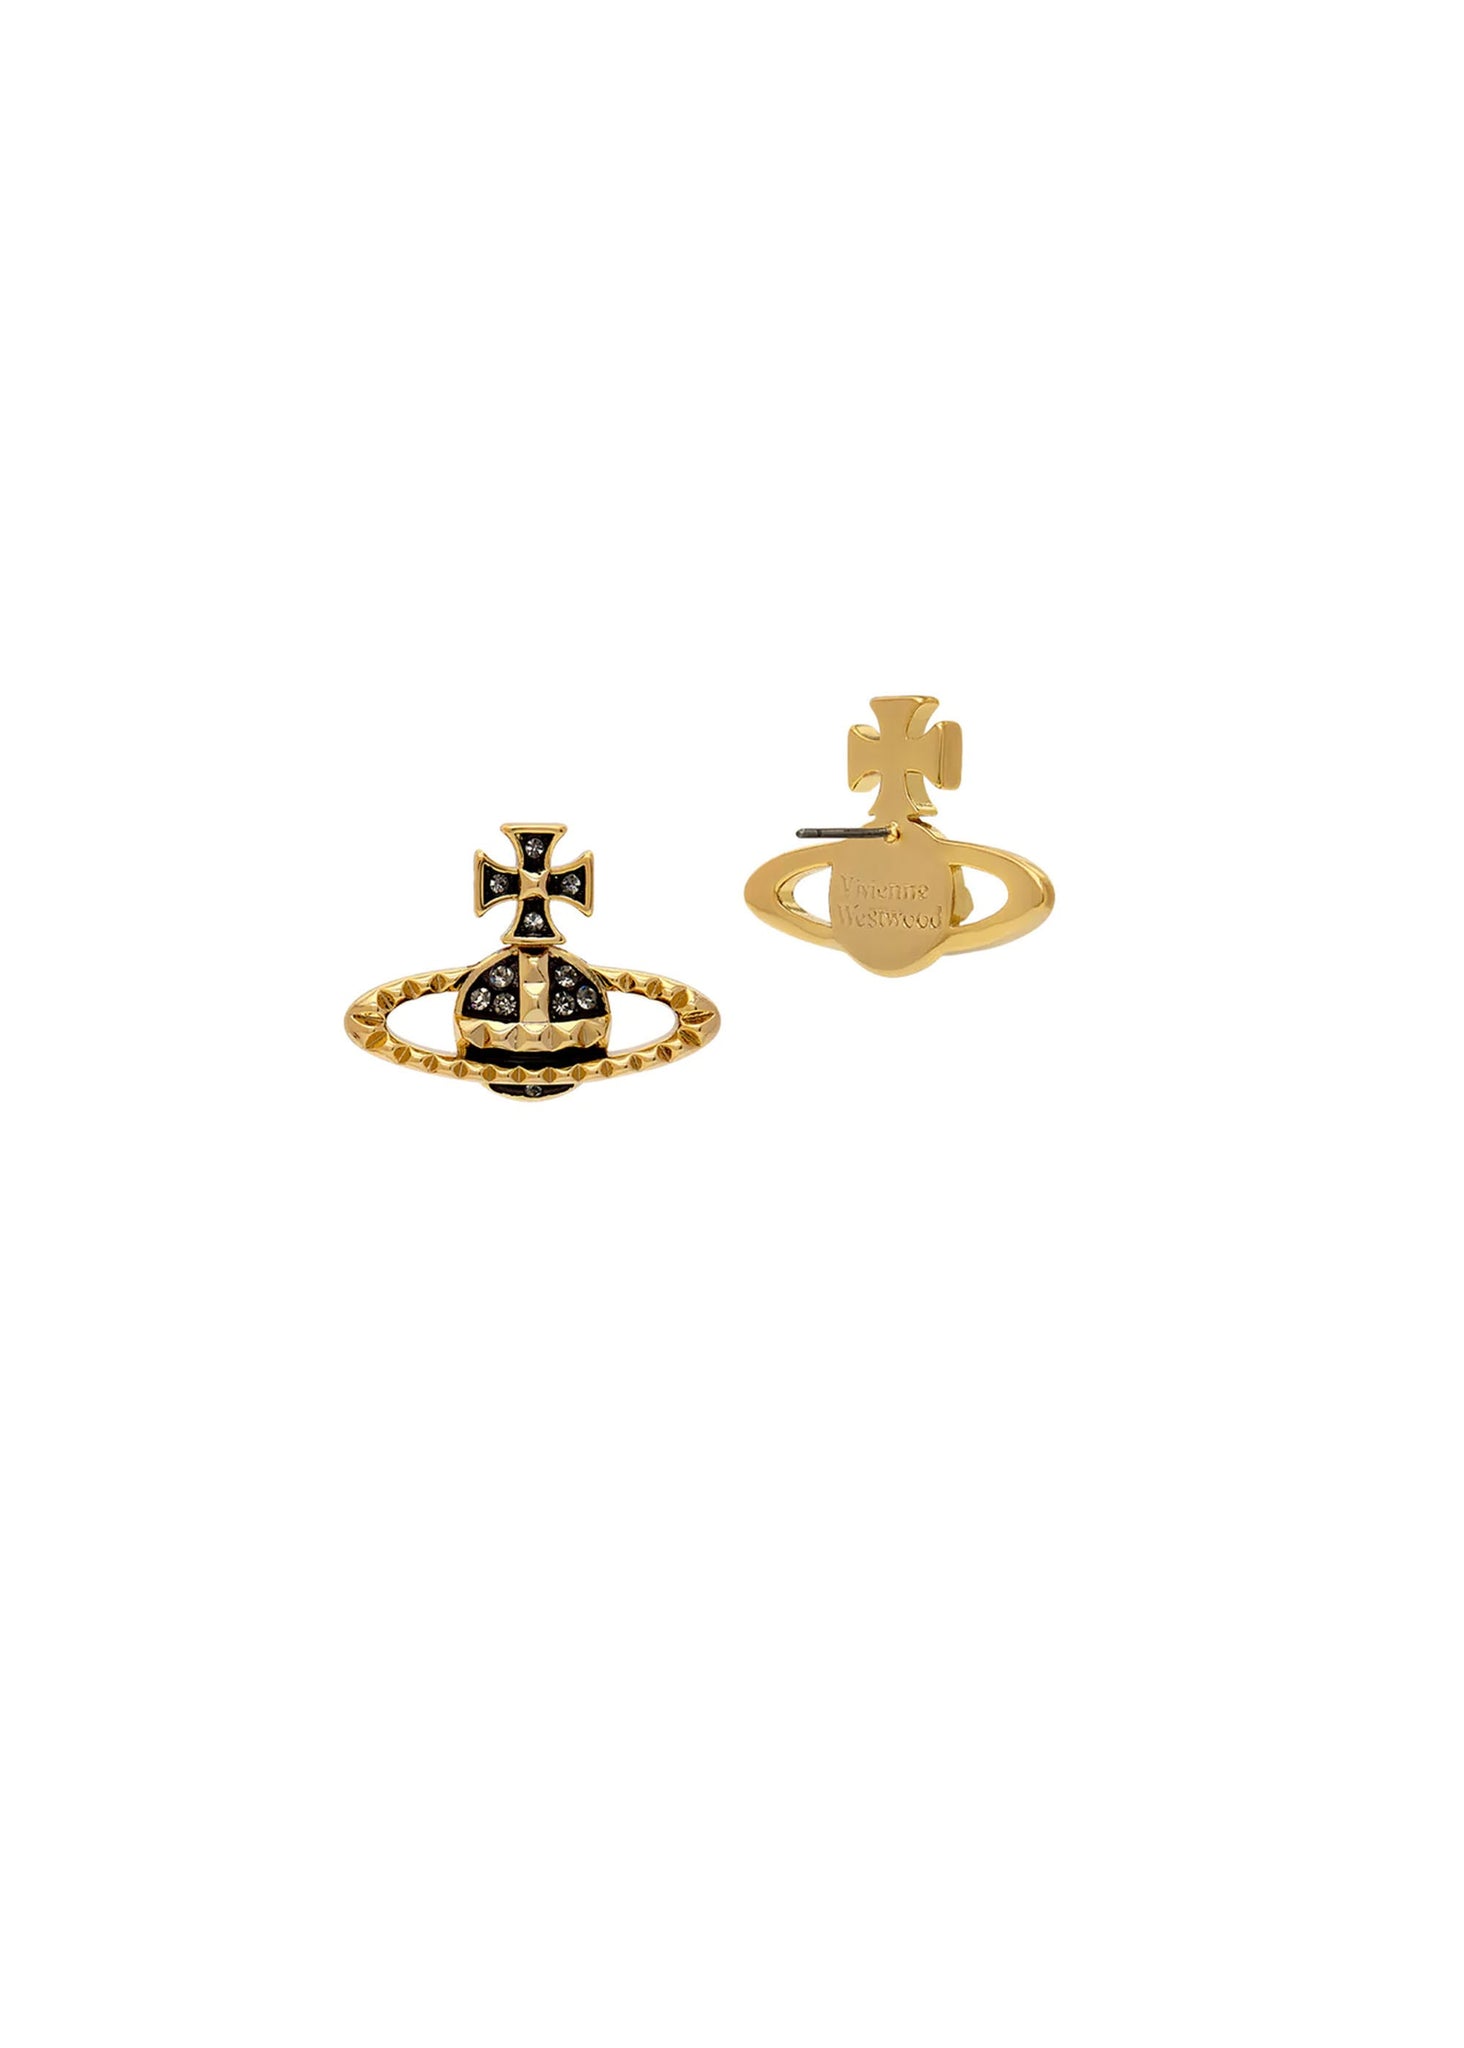 Vivienne Westwood Mayfair Bas Relief Earrings - Gold